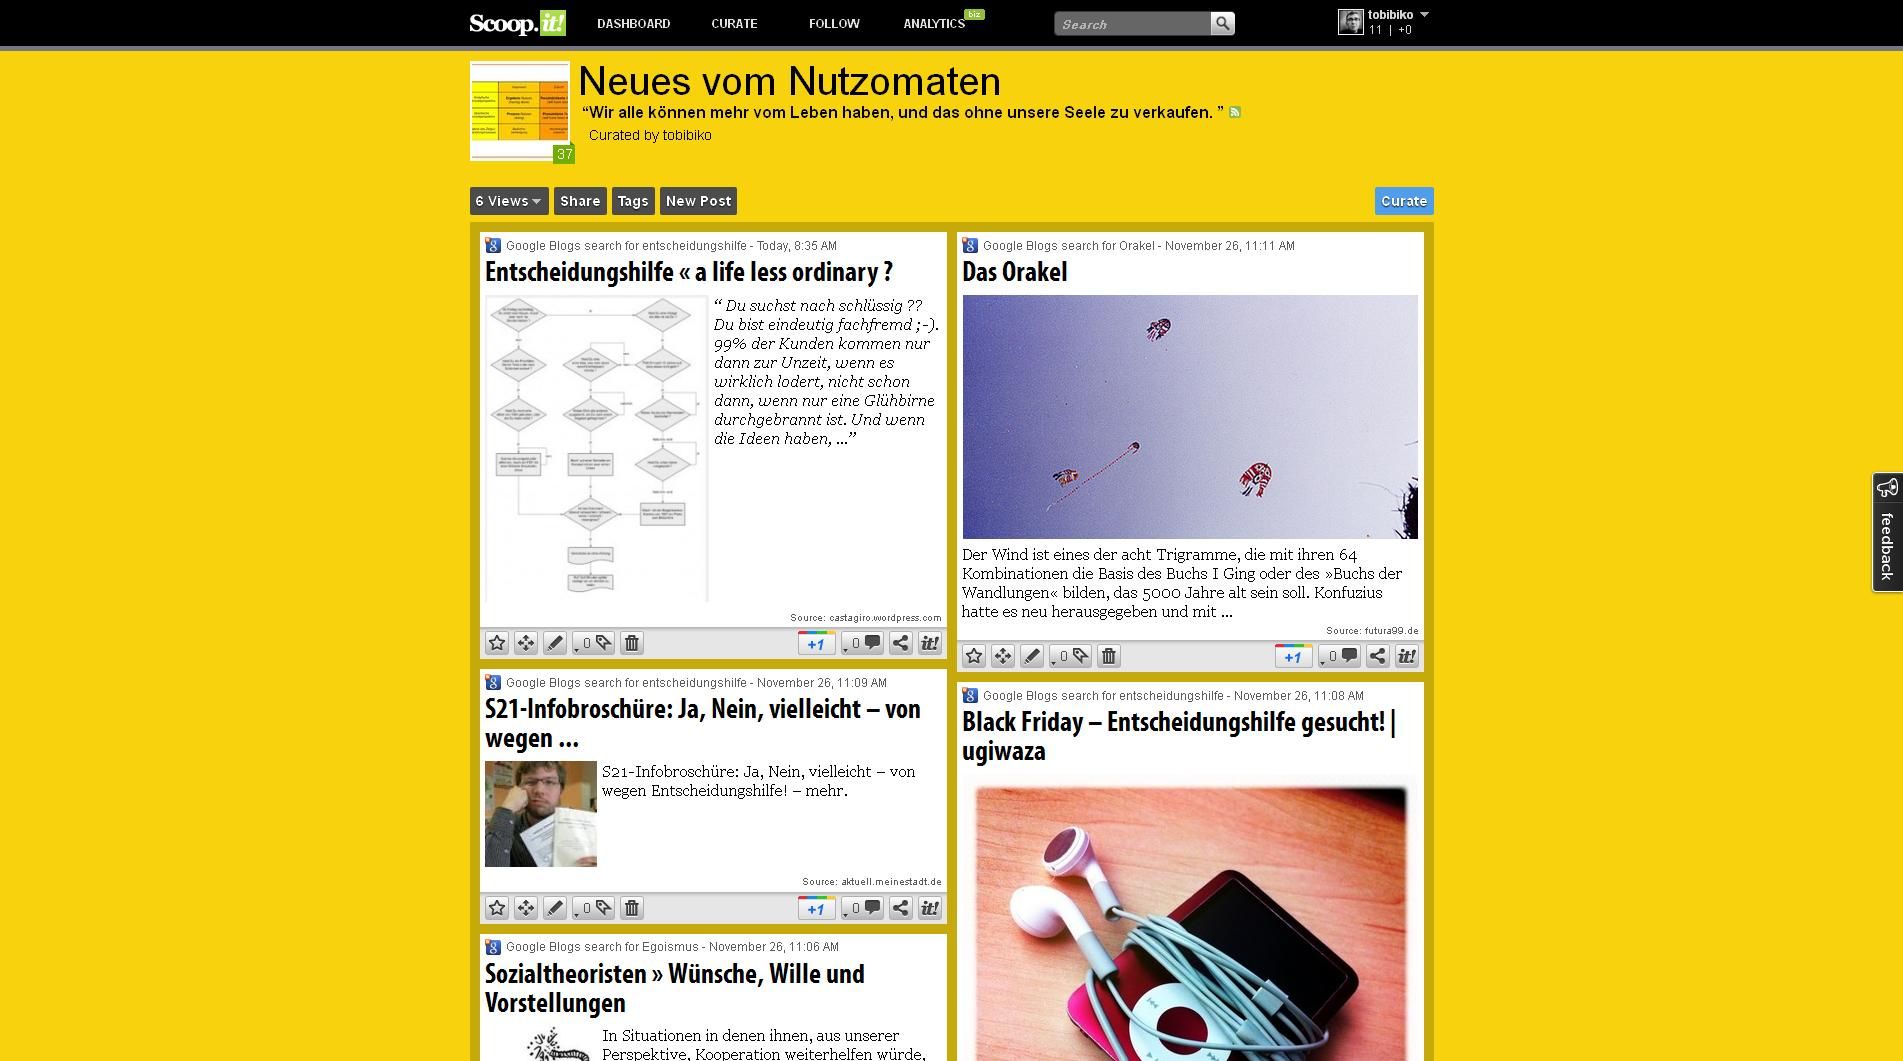 Neues Online-Magazin: Neues vom Nutzomaten